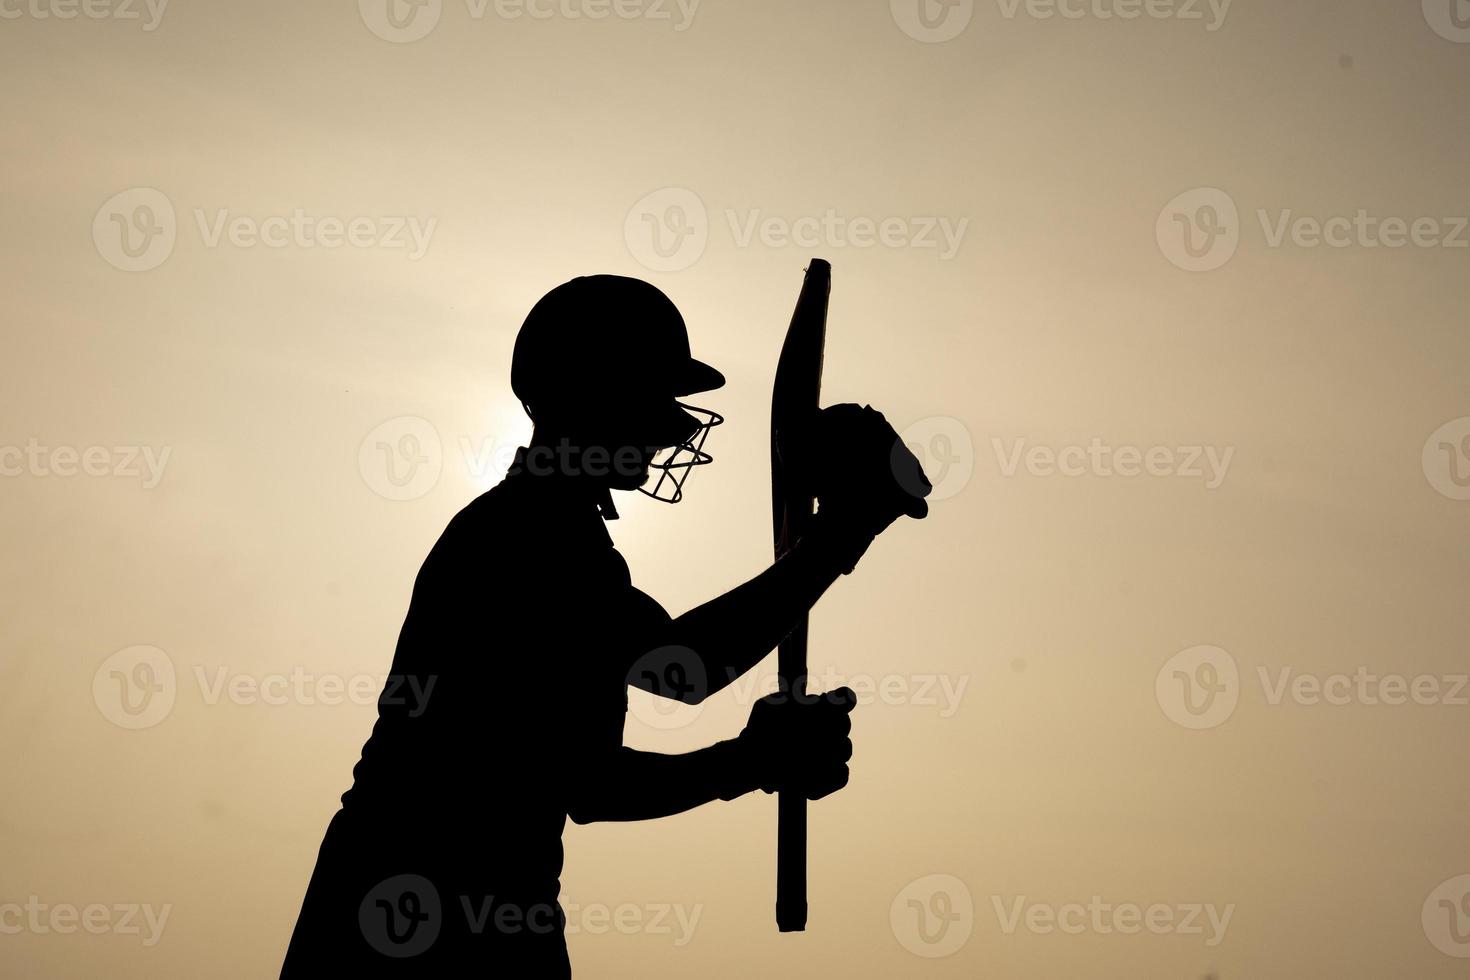 silueta de un jugador de cricket celebrando después de ganar un siglo en el partido de cricket. jugadores de críquet indios y concepto deportivo. foto